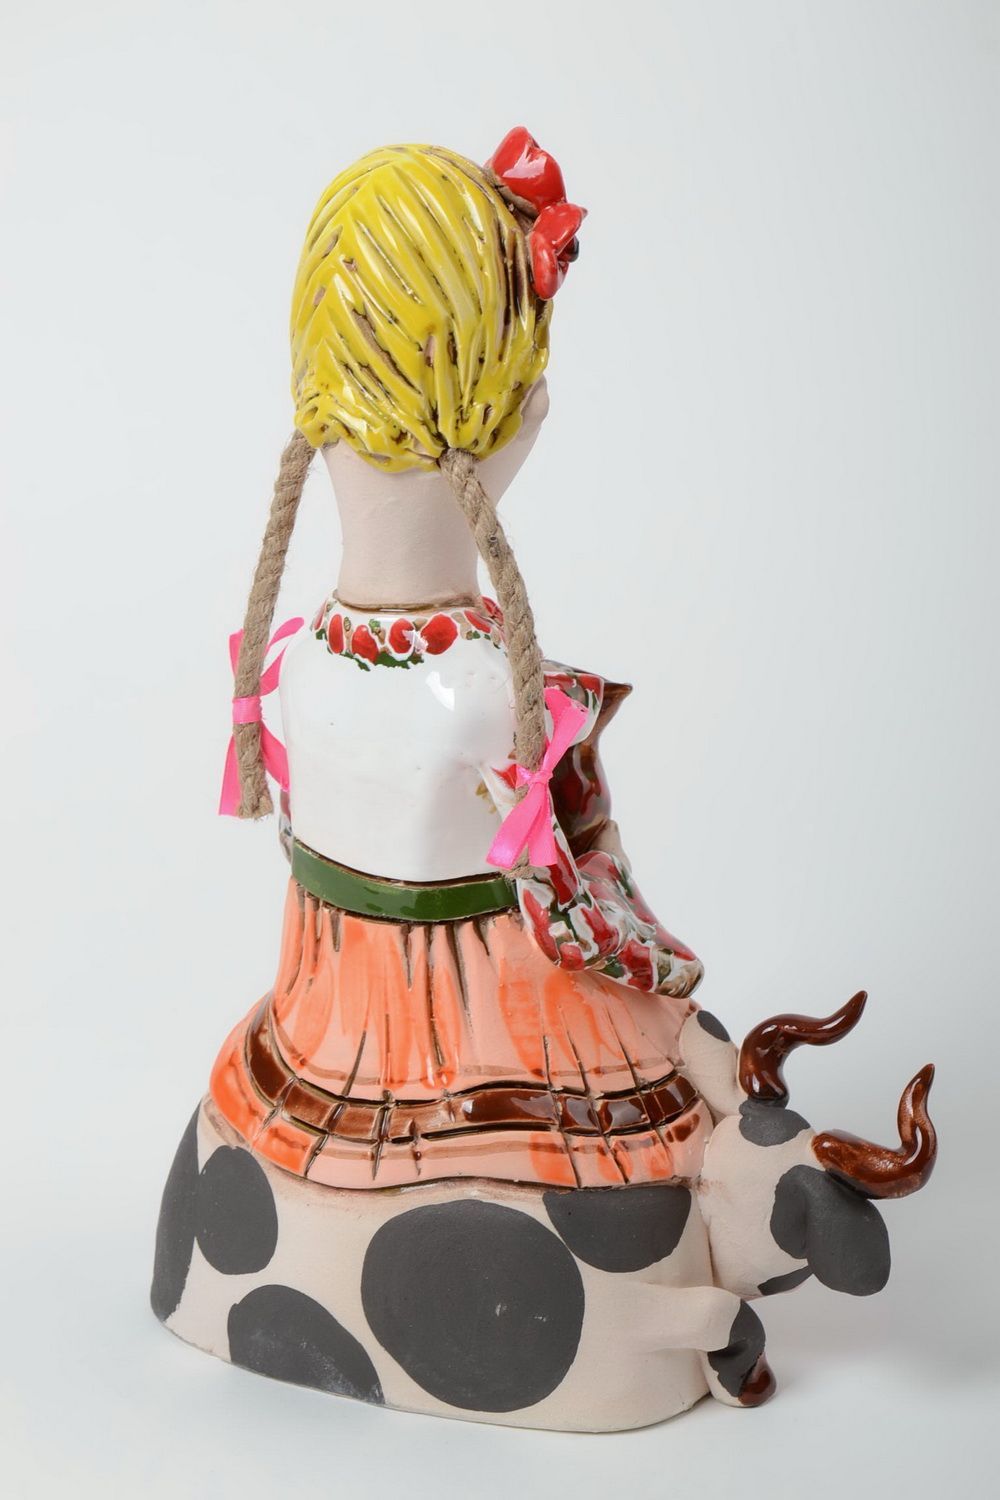 Полуфарфоровая статуэтка расписанная пигментами ручной работы в виде девочки фото 3